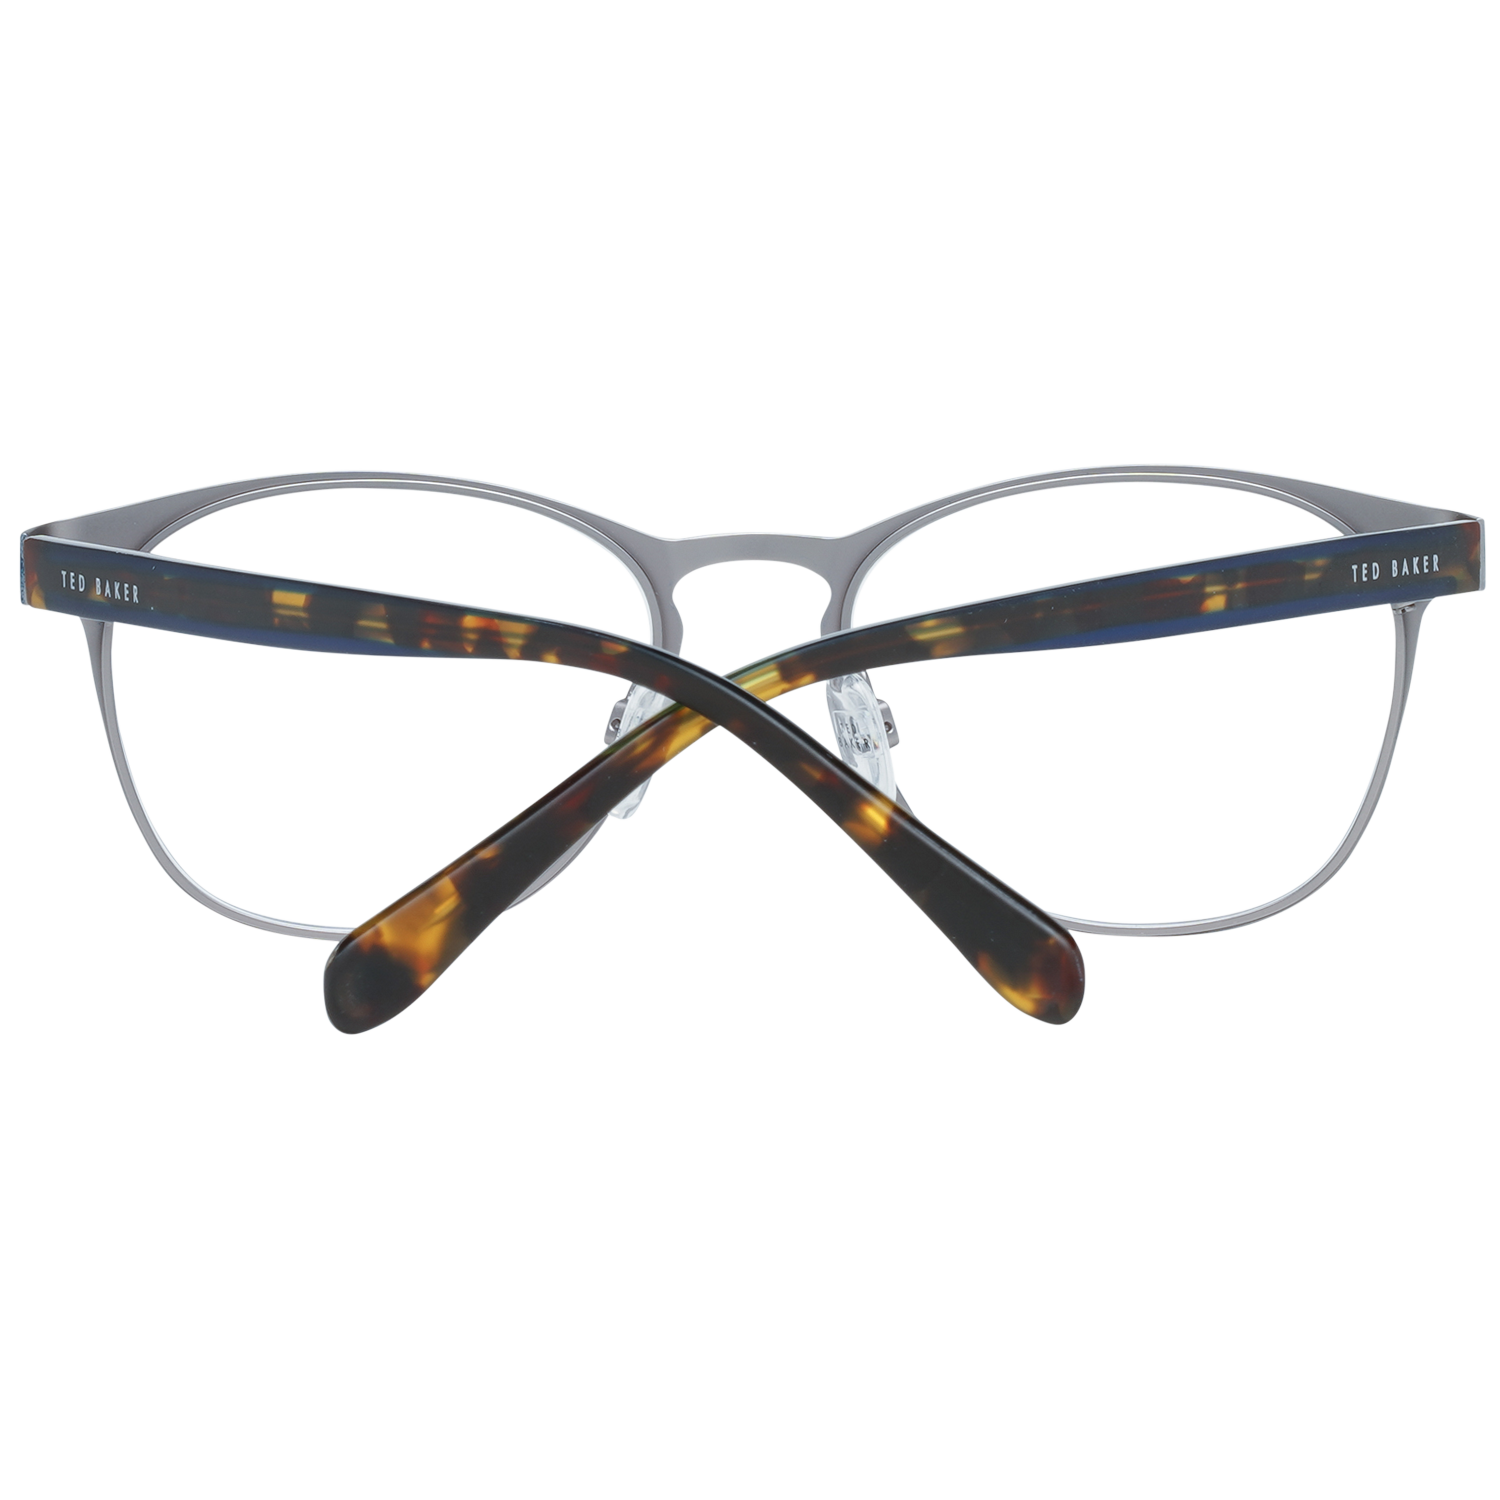 Ted Baker Frames Ted Baker Optical Frame Prescription Glasses TB4271 639 52 Shaw Eyeglasses Eyewear UK USA Australia 